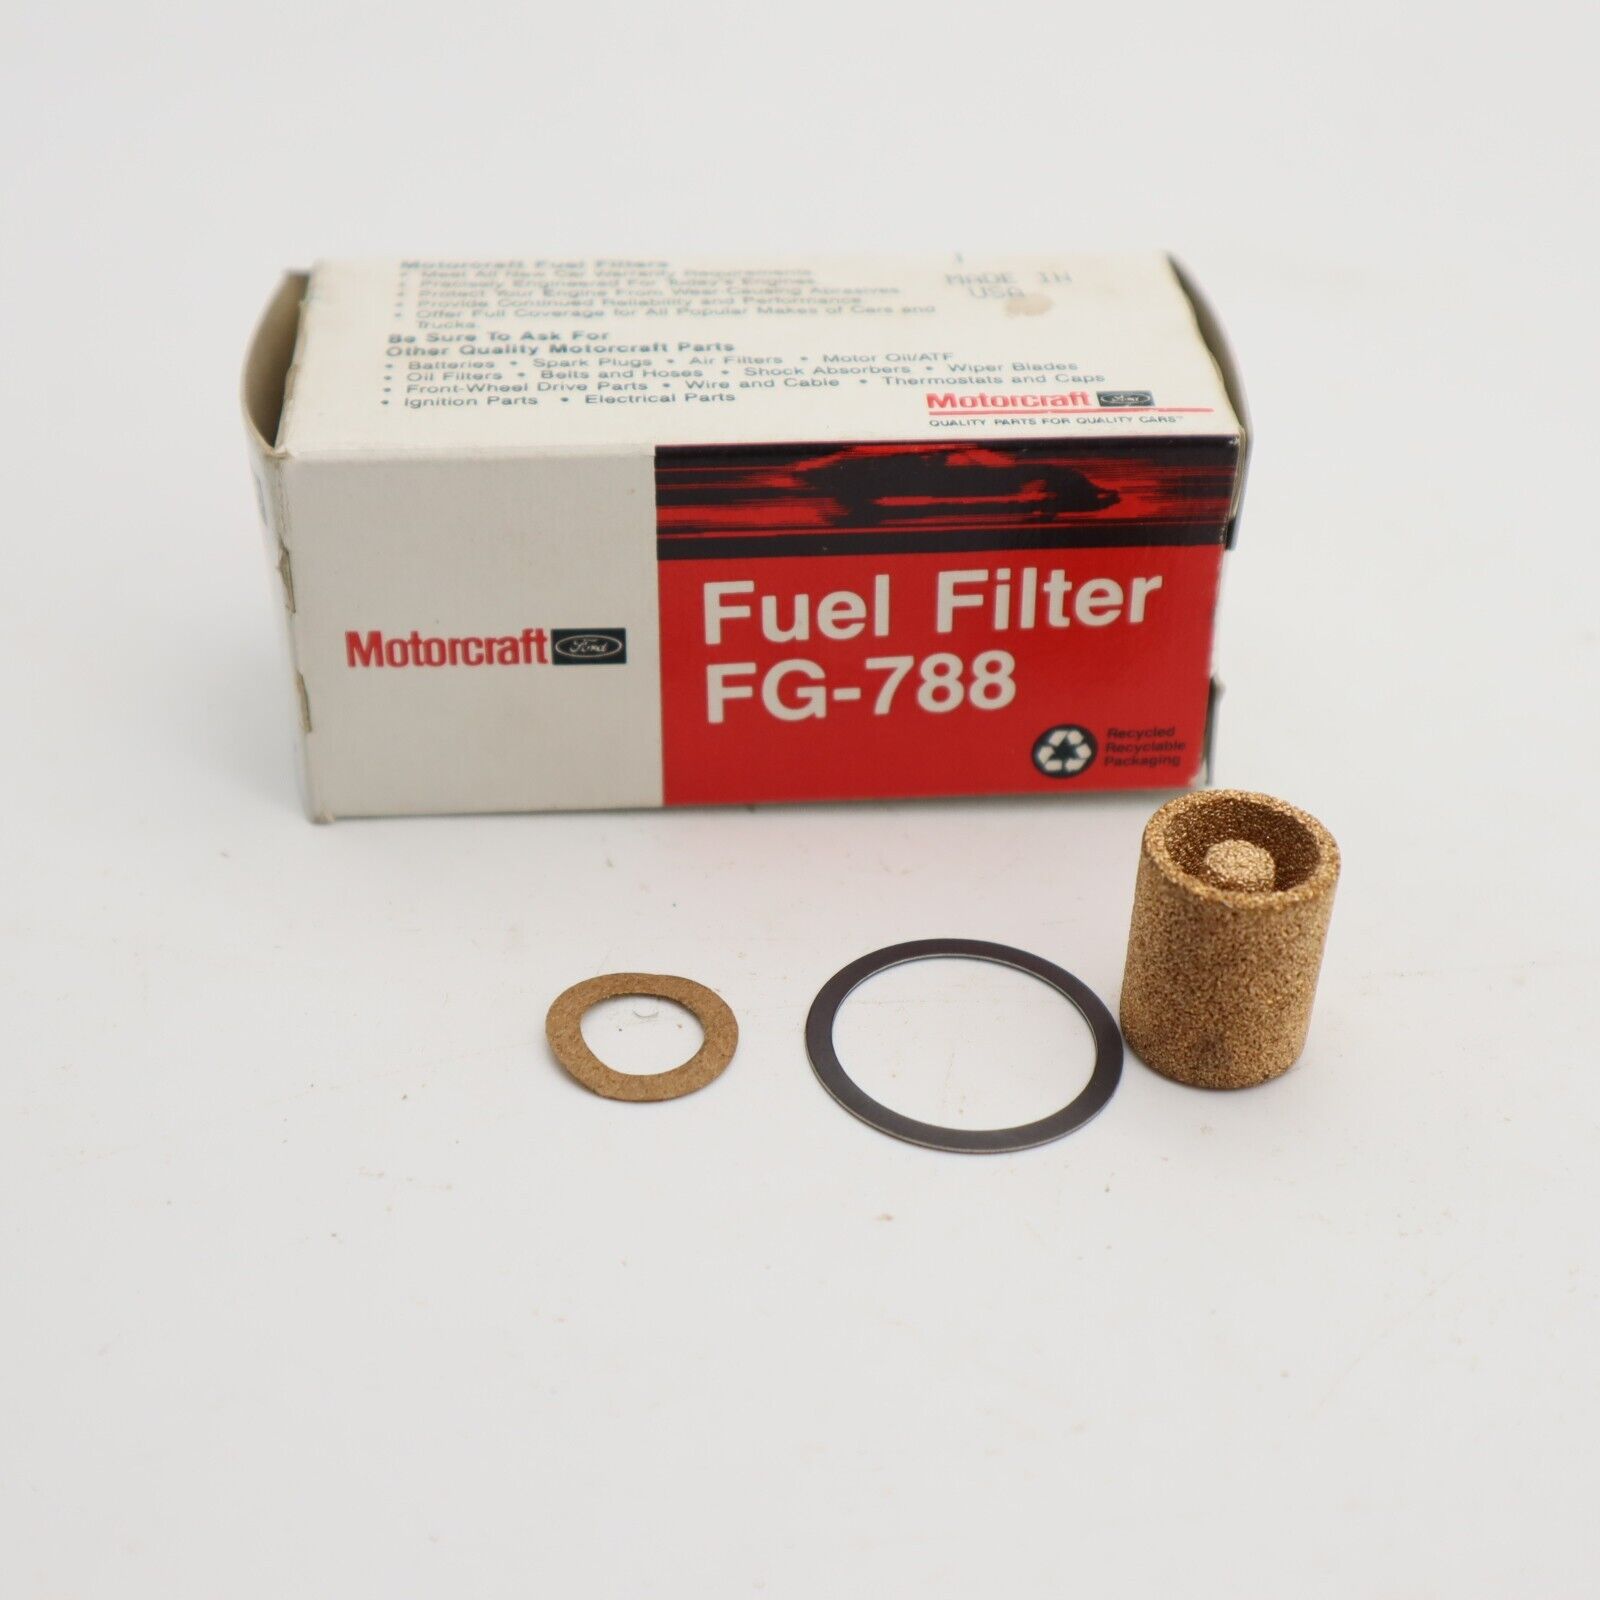 NOS Fuel Filter 5.0L w/ 4V Carb 1983-1985 Mustang Capri D9PZ-9155-A FG-788 F250